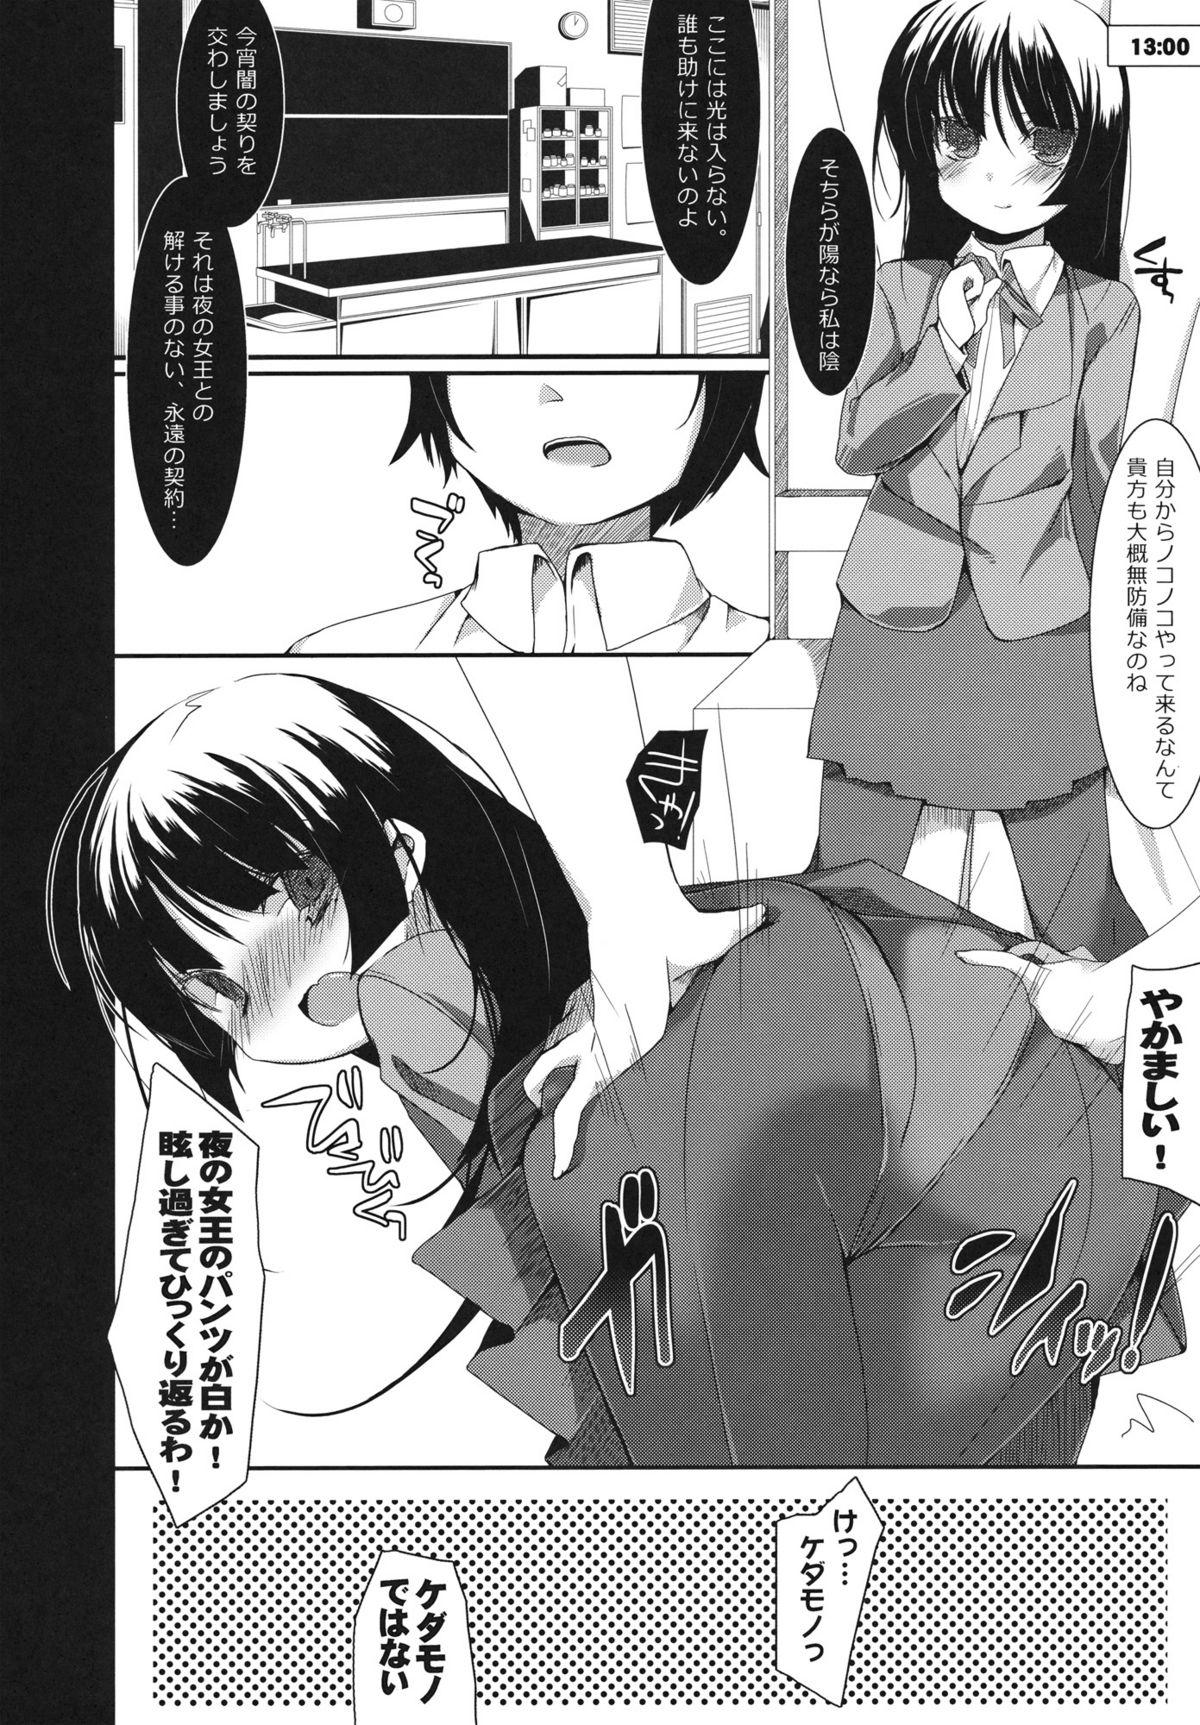 Pissing Kousaka Kyousuke no Karei Naru Nichijou - Ore no imouto ga konna ni kawaii wake ga nai Free - Page 9